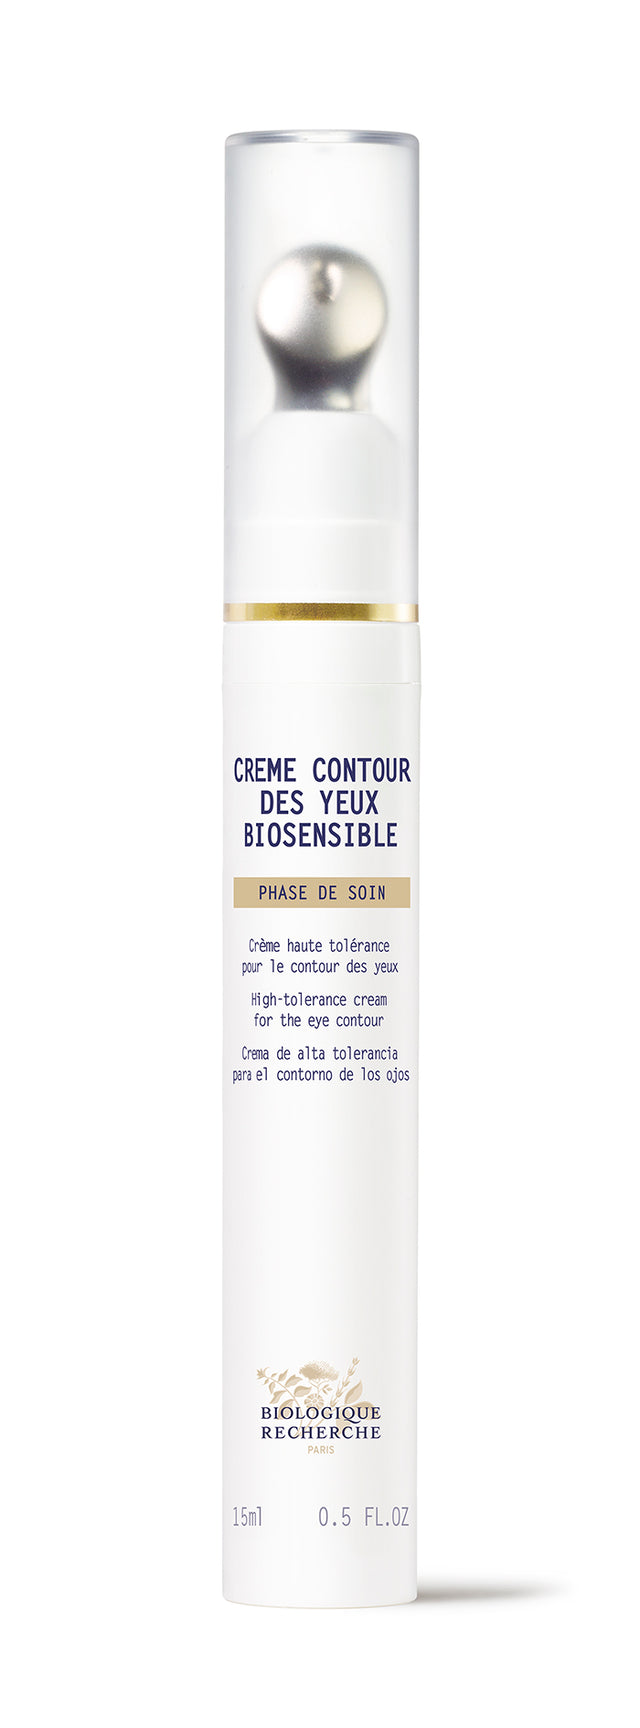 Product Image of Crème contour des yeux Biosensible #2